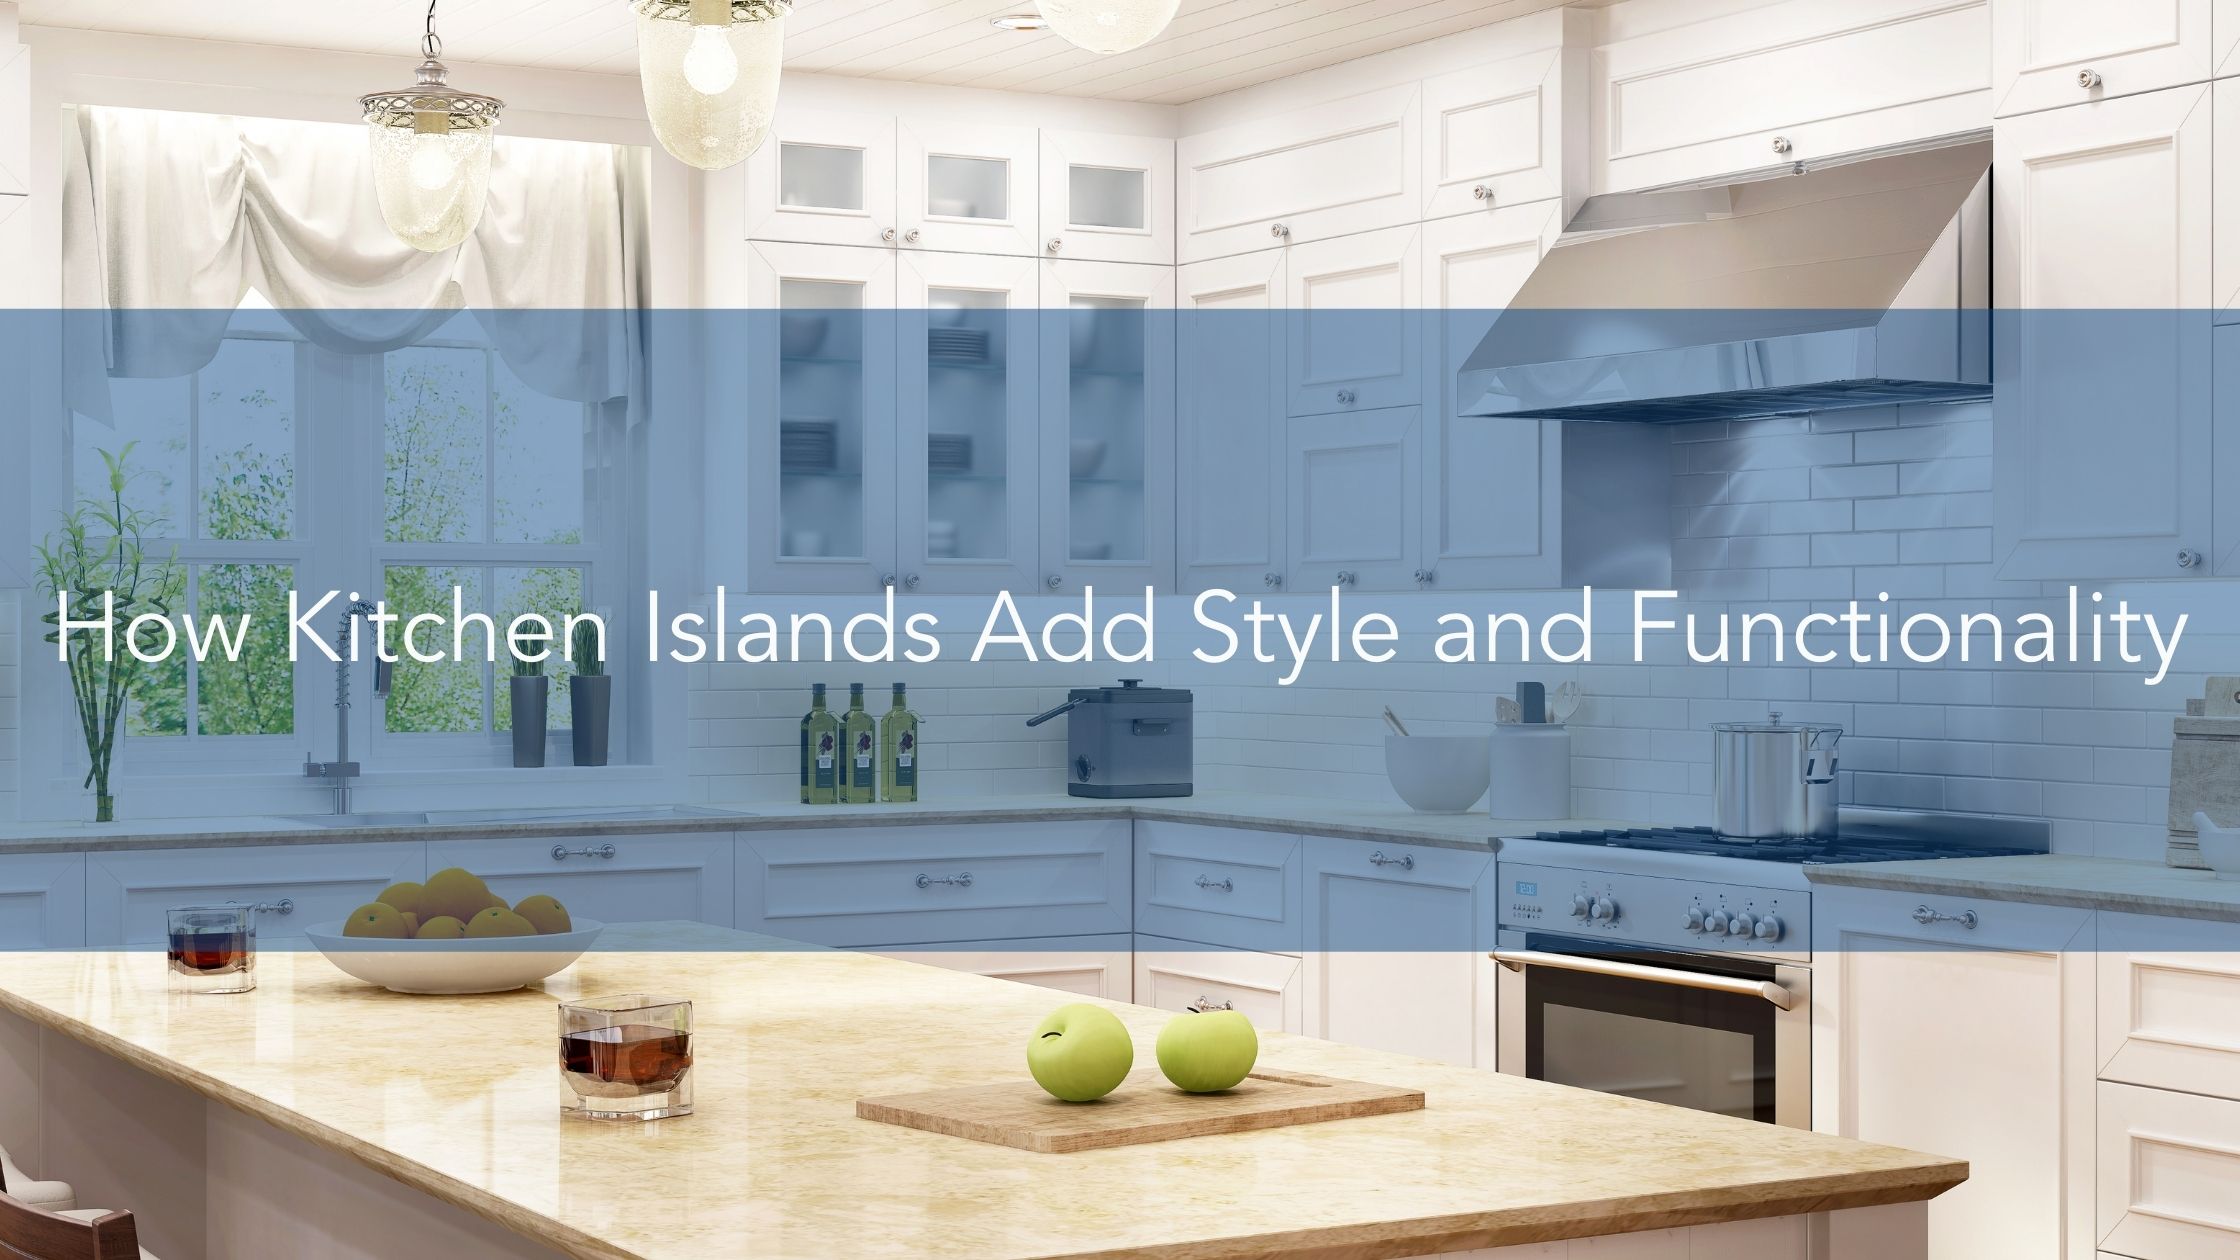 厨房岛如何增加风格和功能